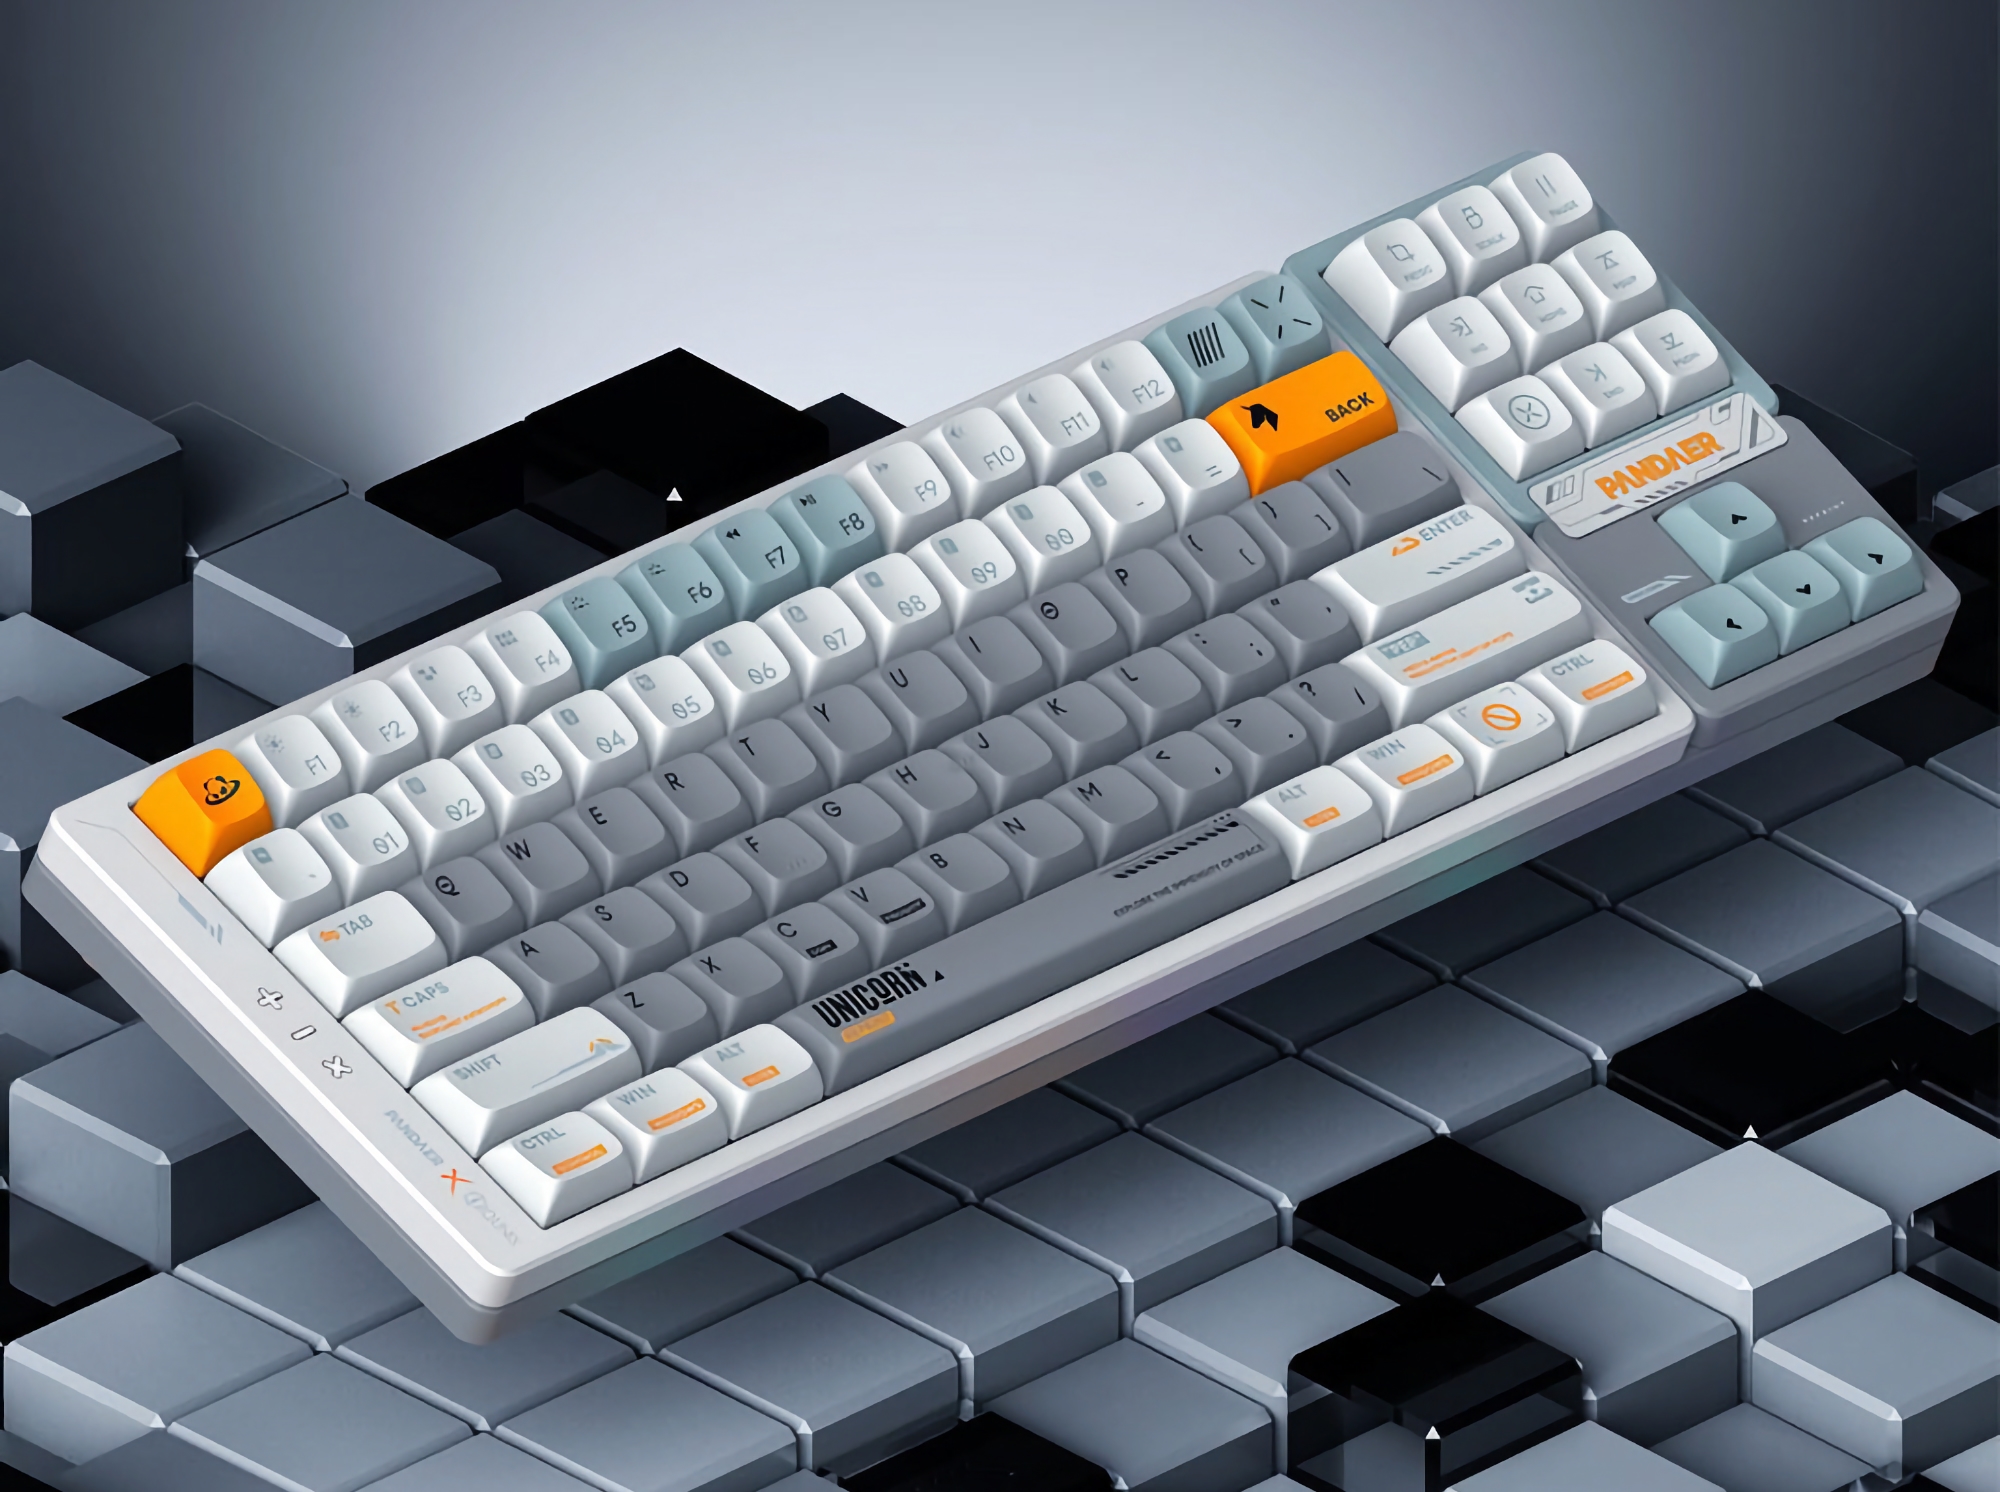 Meizu представила під брендом PANDAER нову механічну клавіатуру з RGB-підсвічуванням, знімними клавішами і трьома режимами підключення